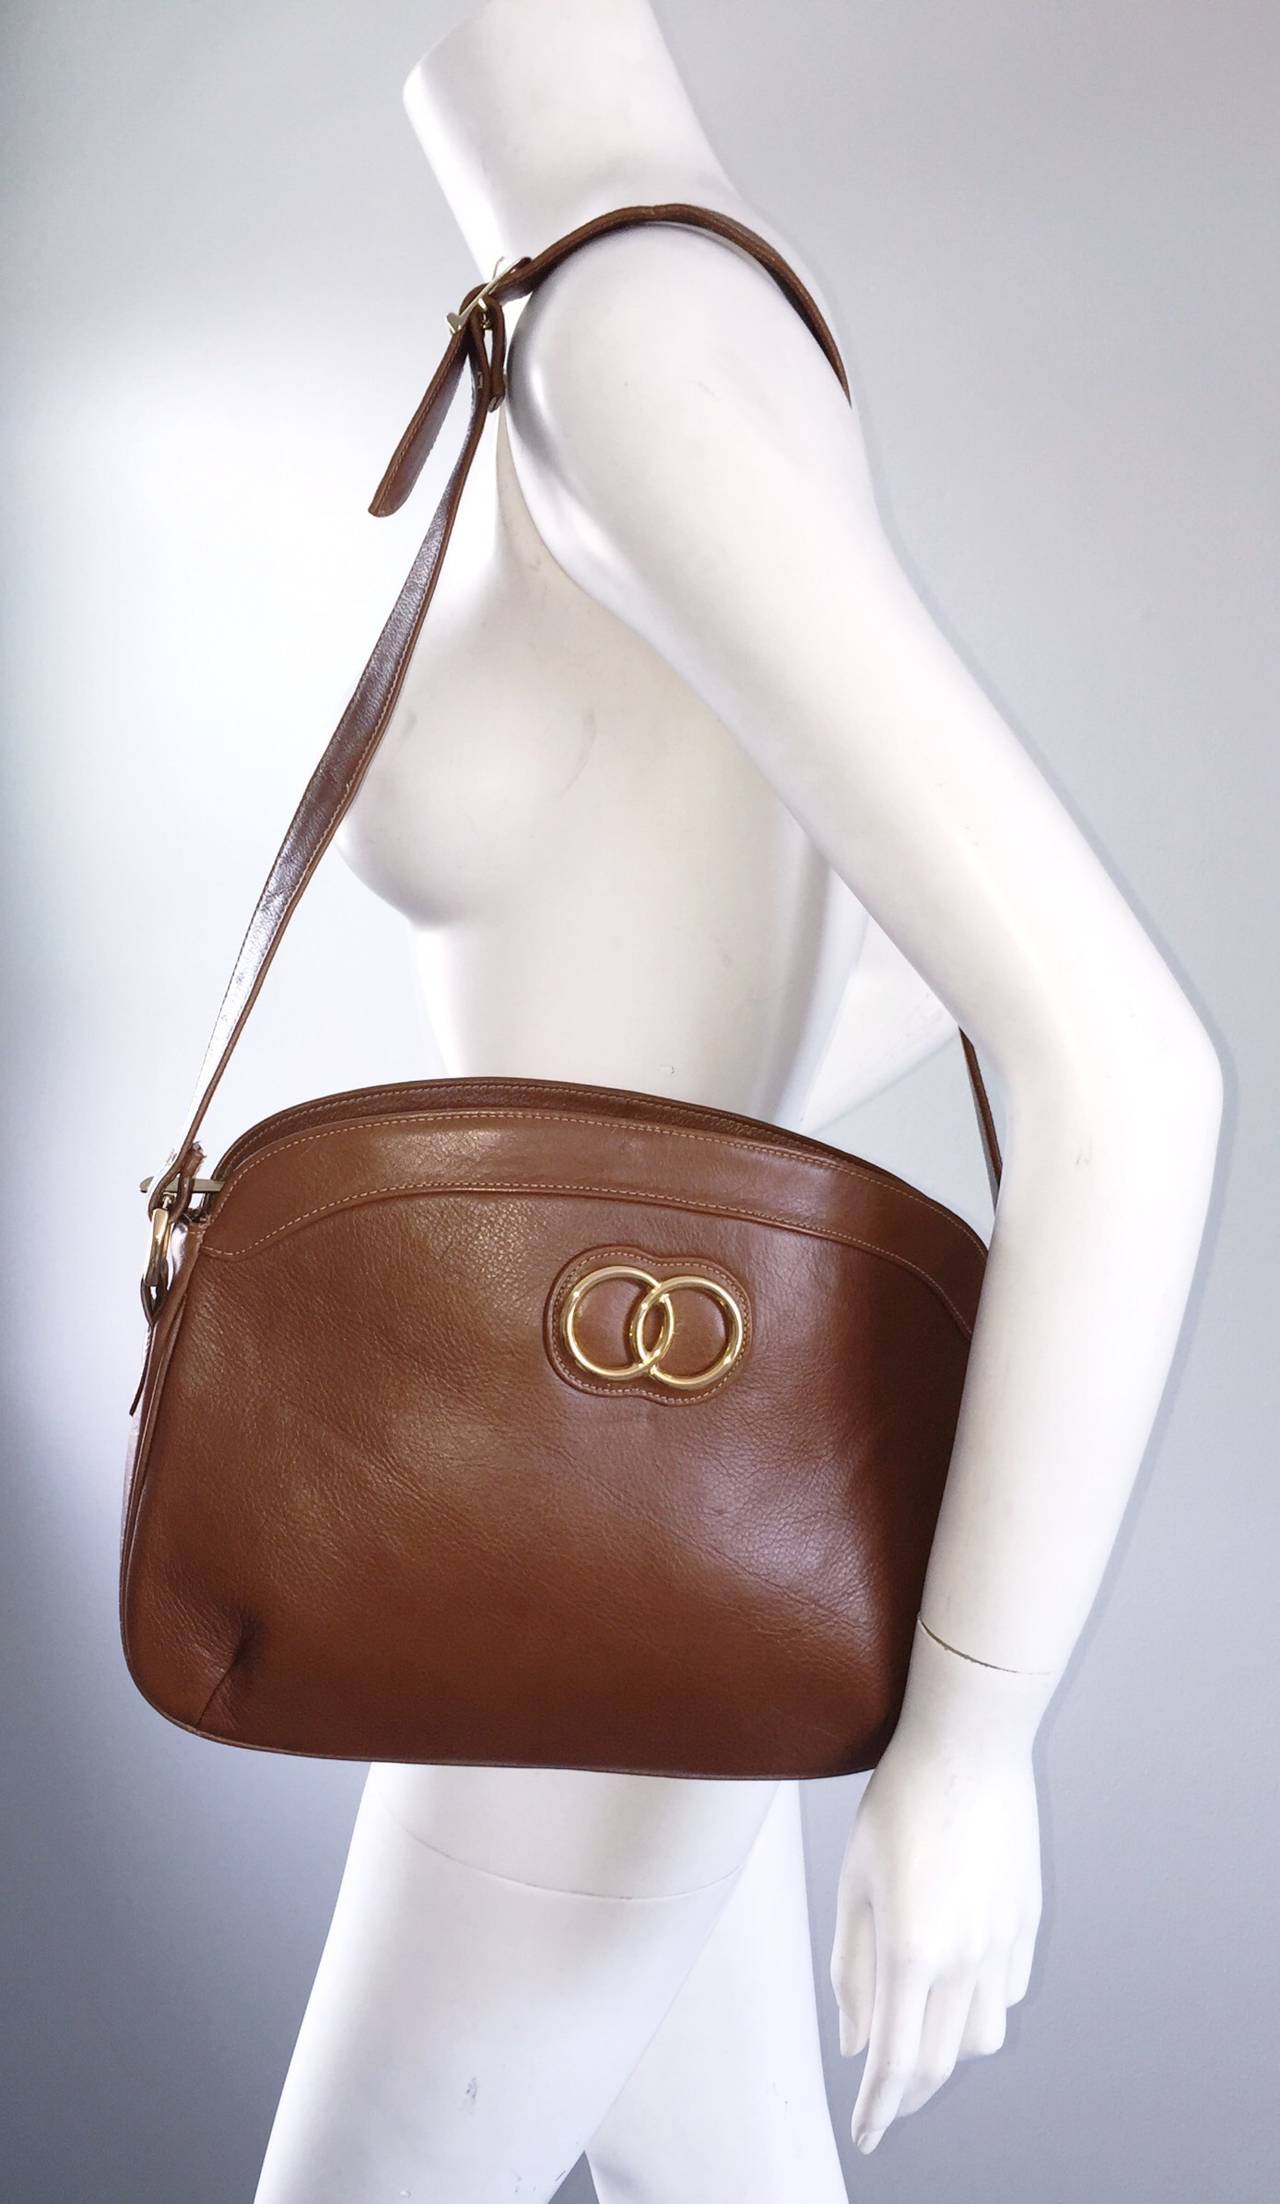 Perfect Brand New Vintage Saks Fifth Avenue Saddle Tan Handbag Purse Bag For Sale at 1stdibs